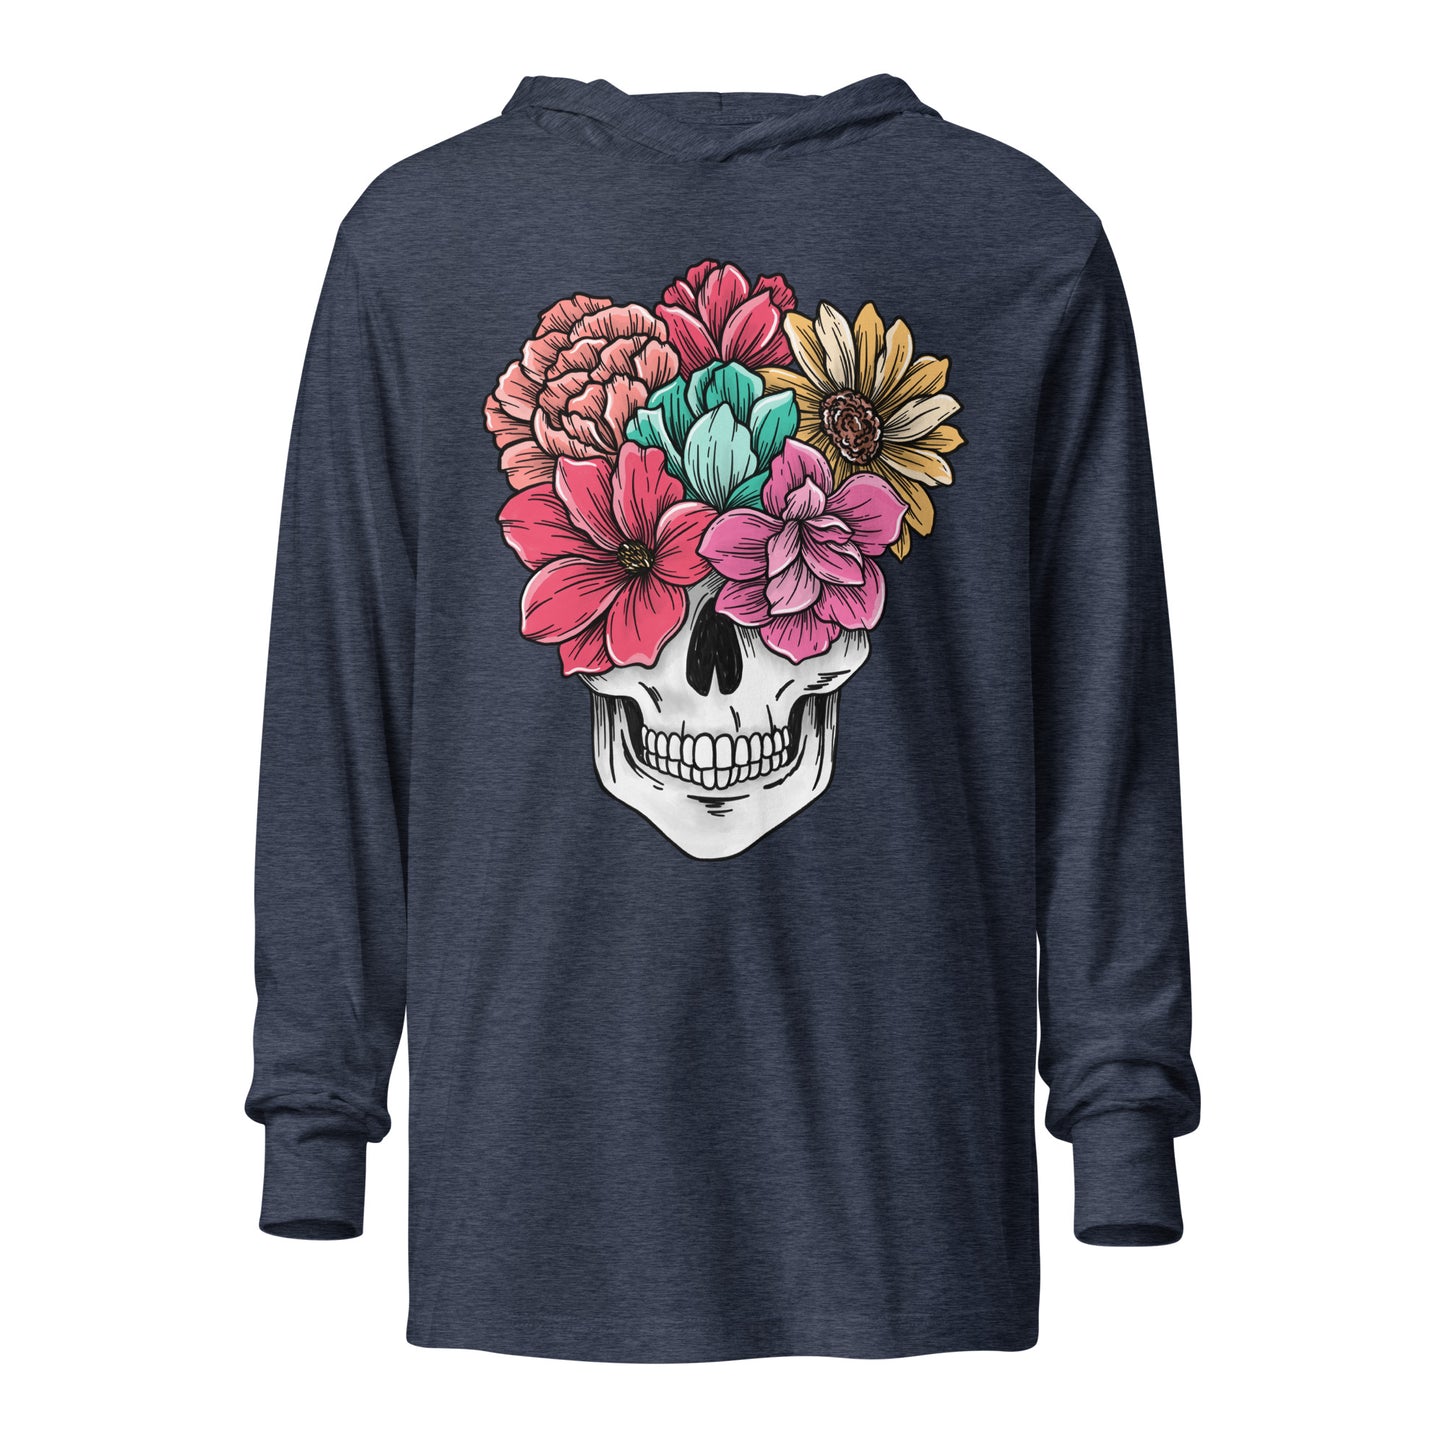 Flowering Skull - Hooded long-sleeve tee